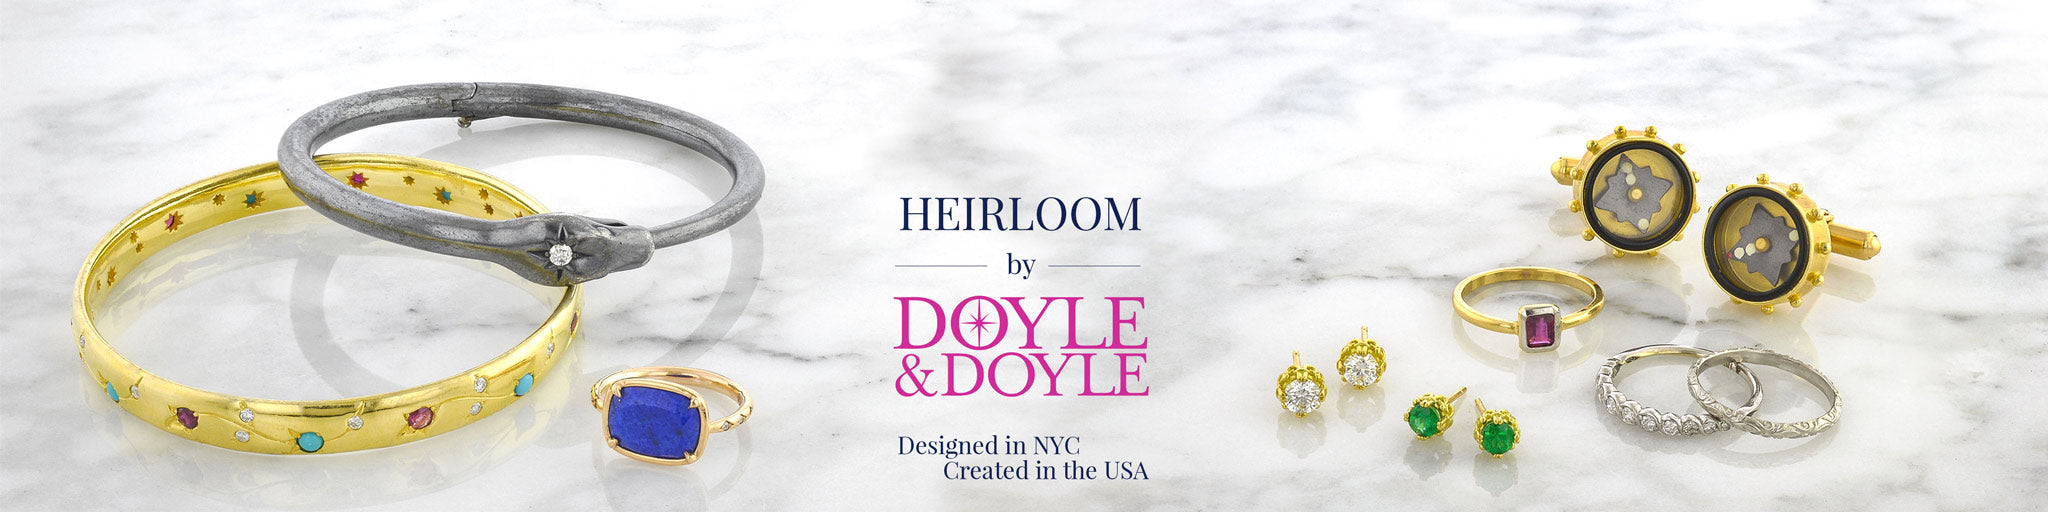 Heirloom by Doyle & Doyle